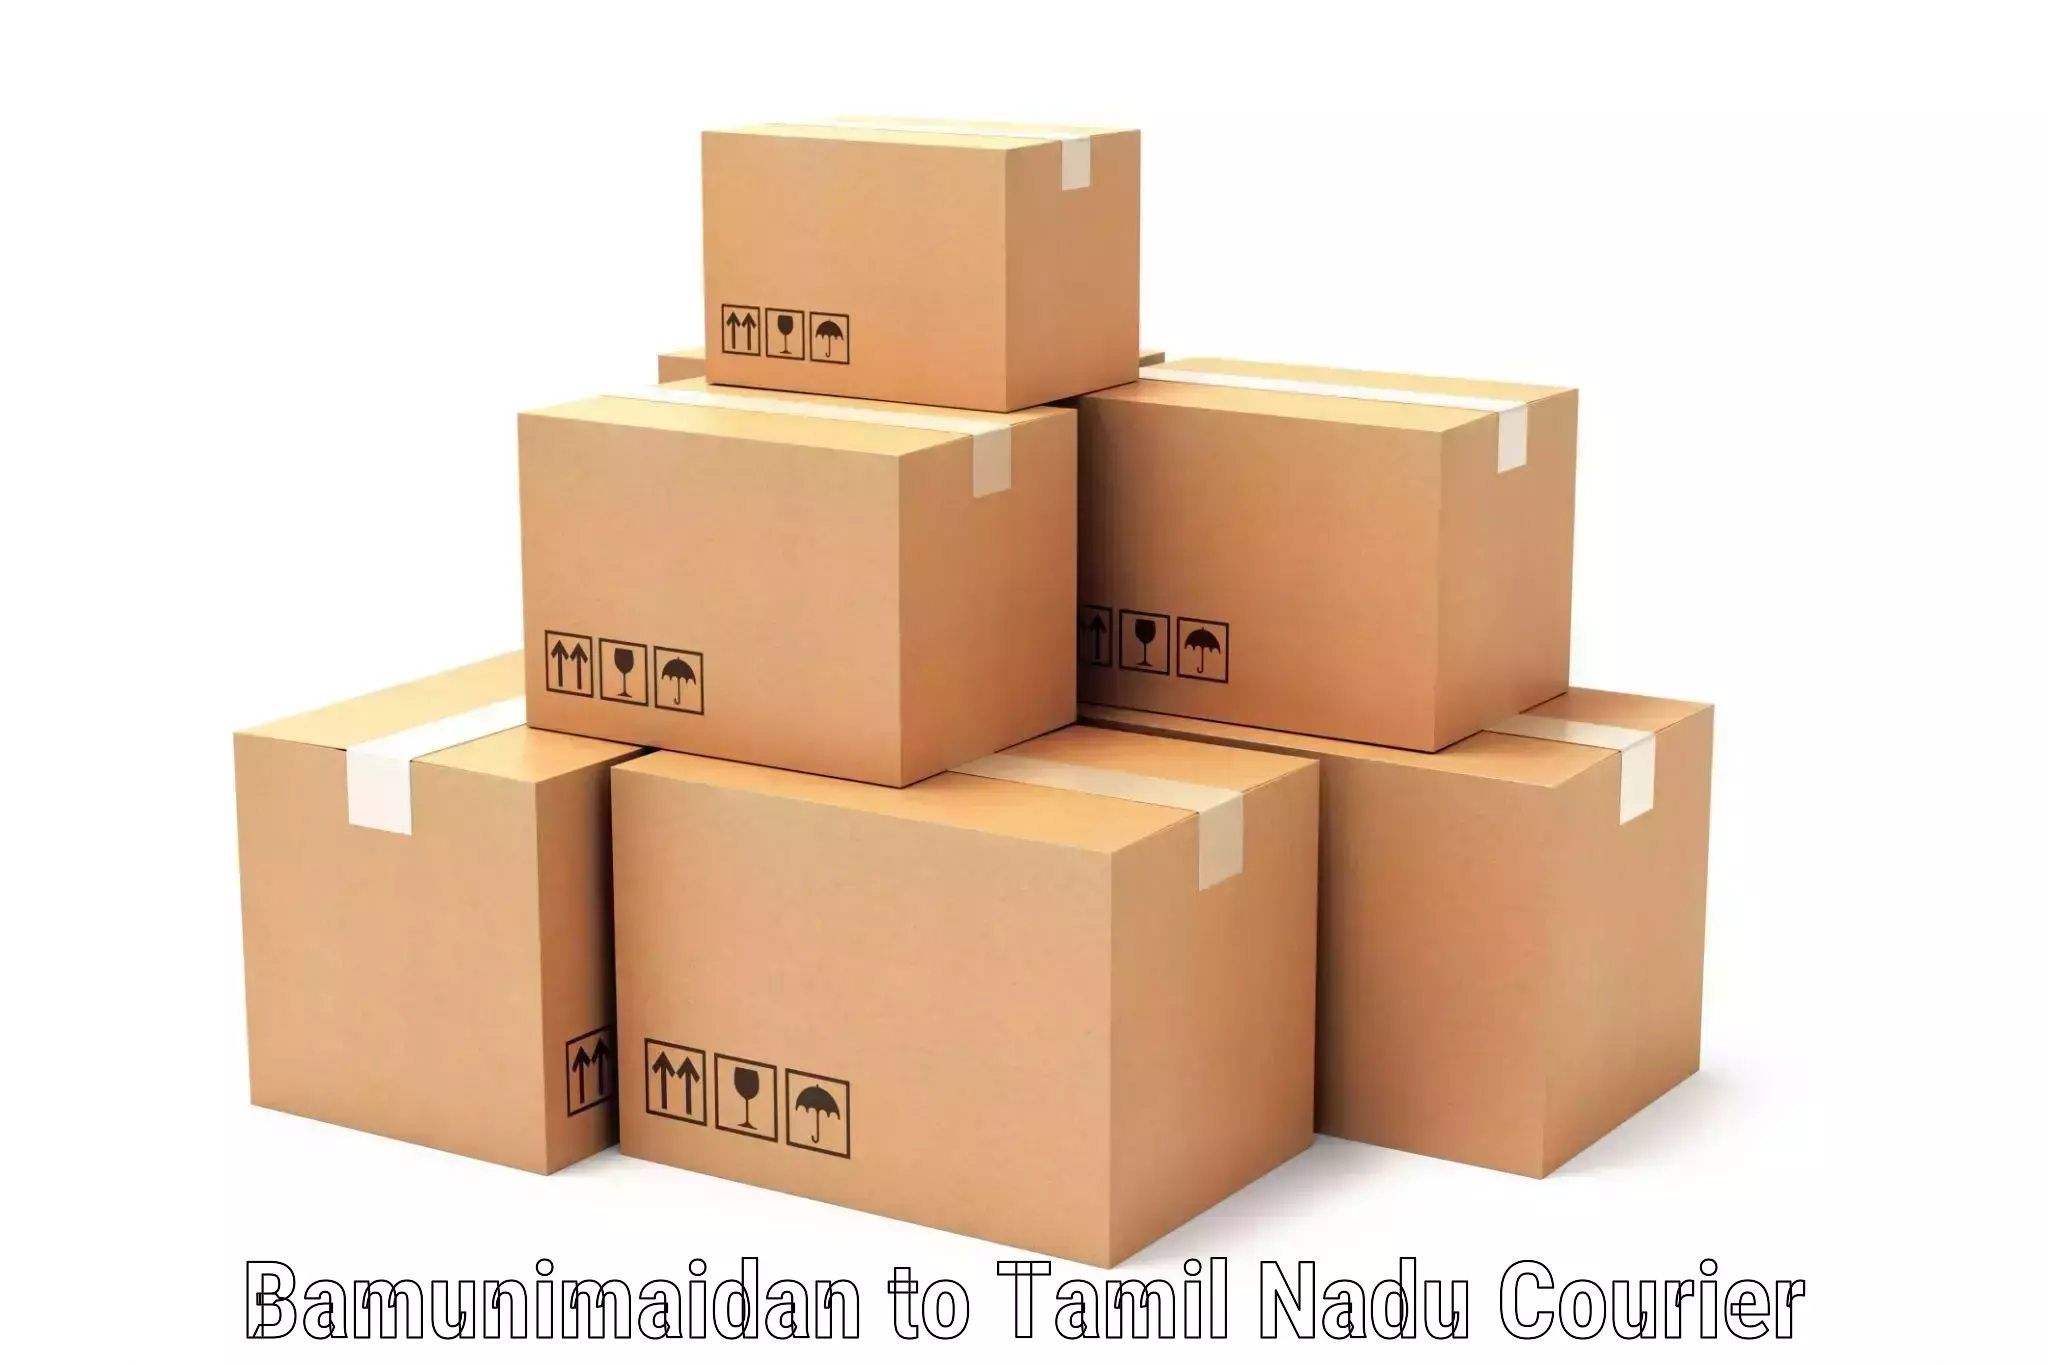 Multi-service courier options Bamunimaidan to Thiruvadanai